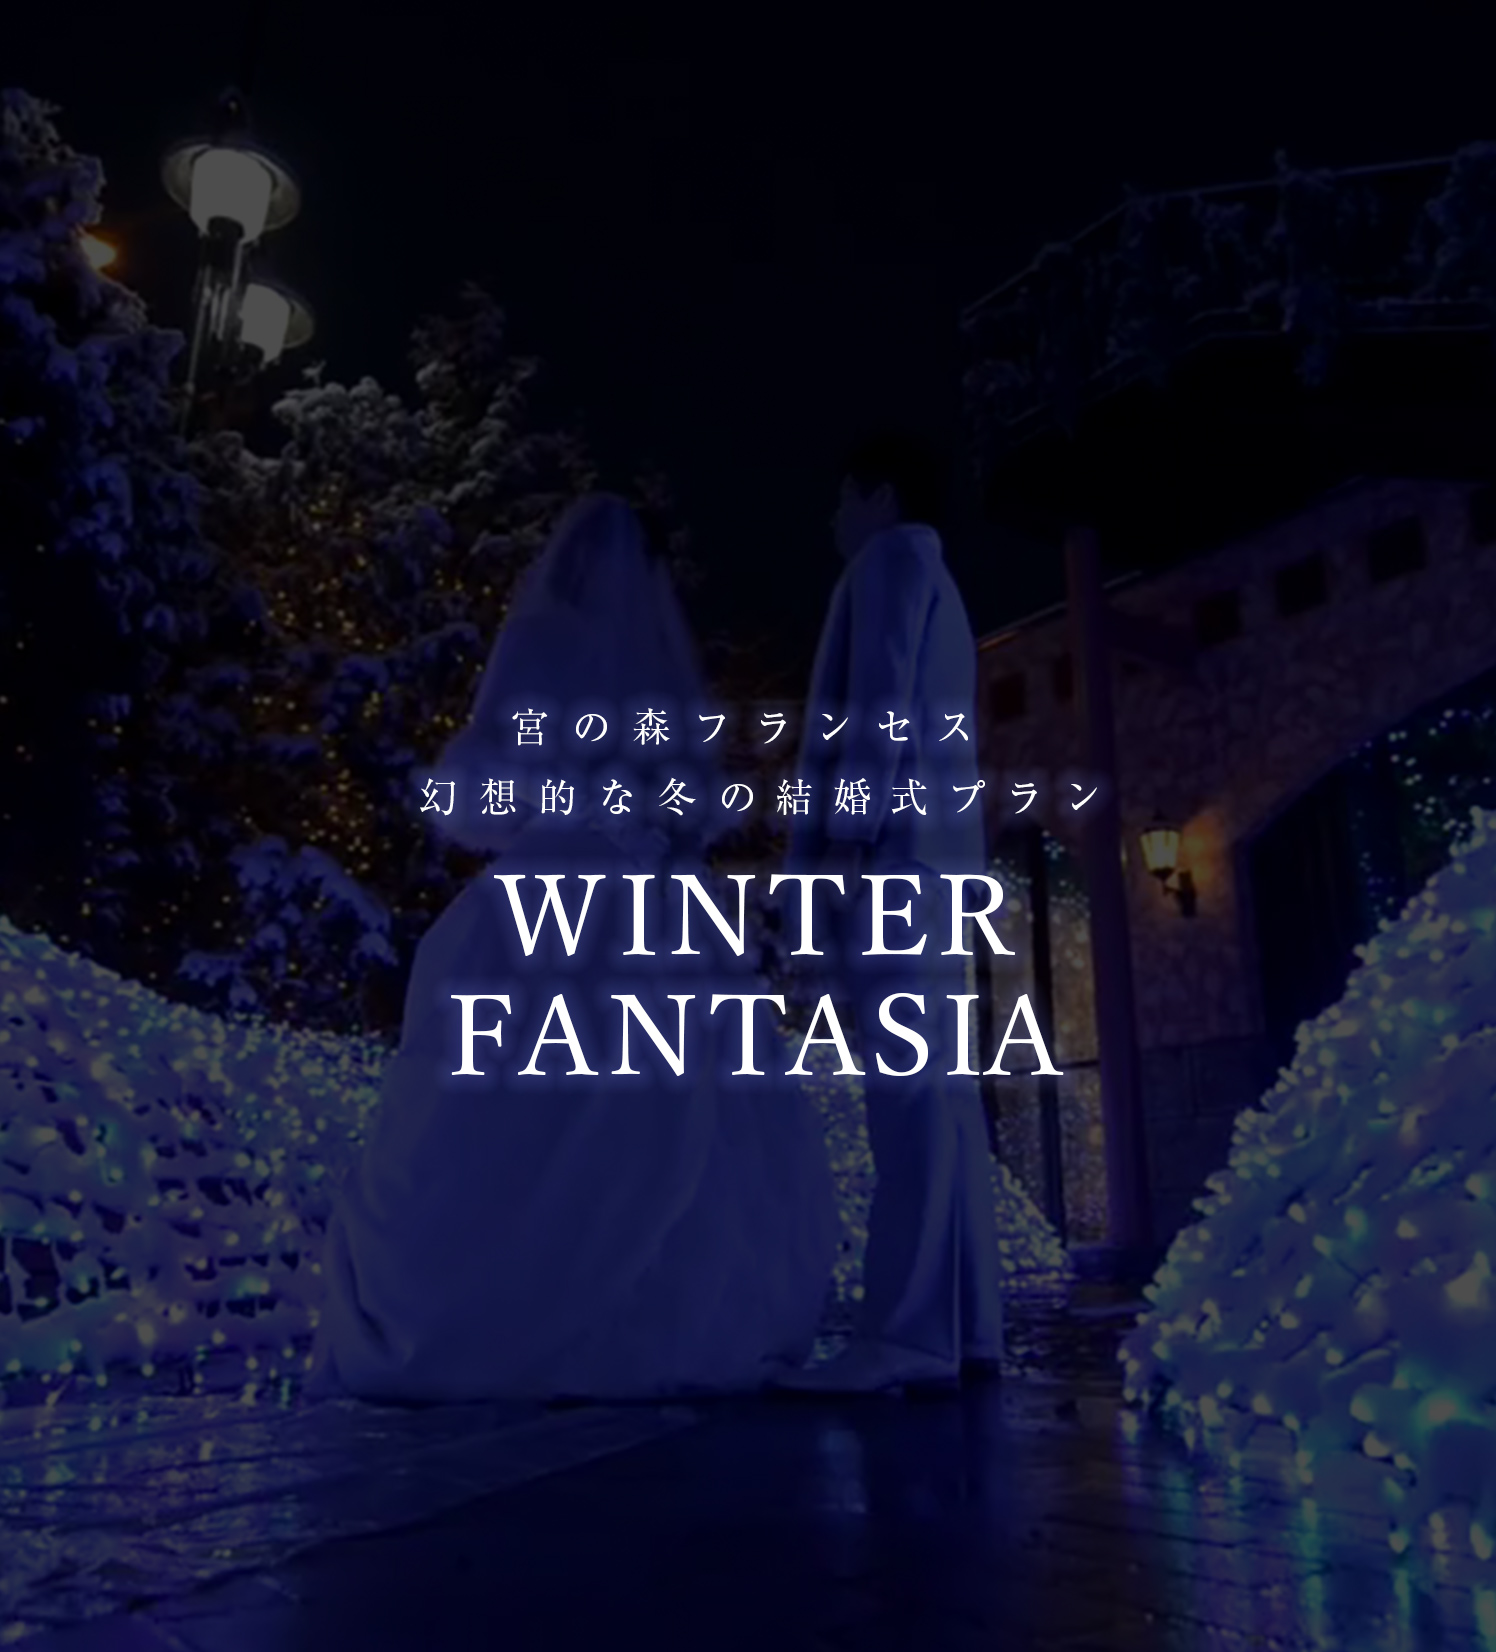 宮の森フランセス 幻想的な冬の結婚式プラン WINTER FANTASIA